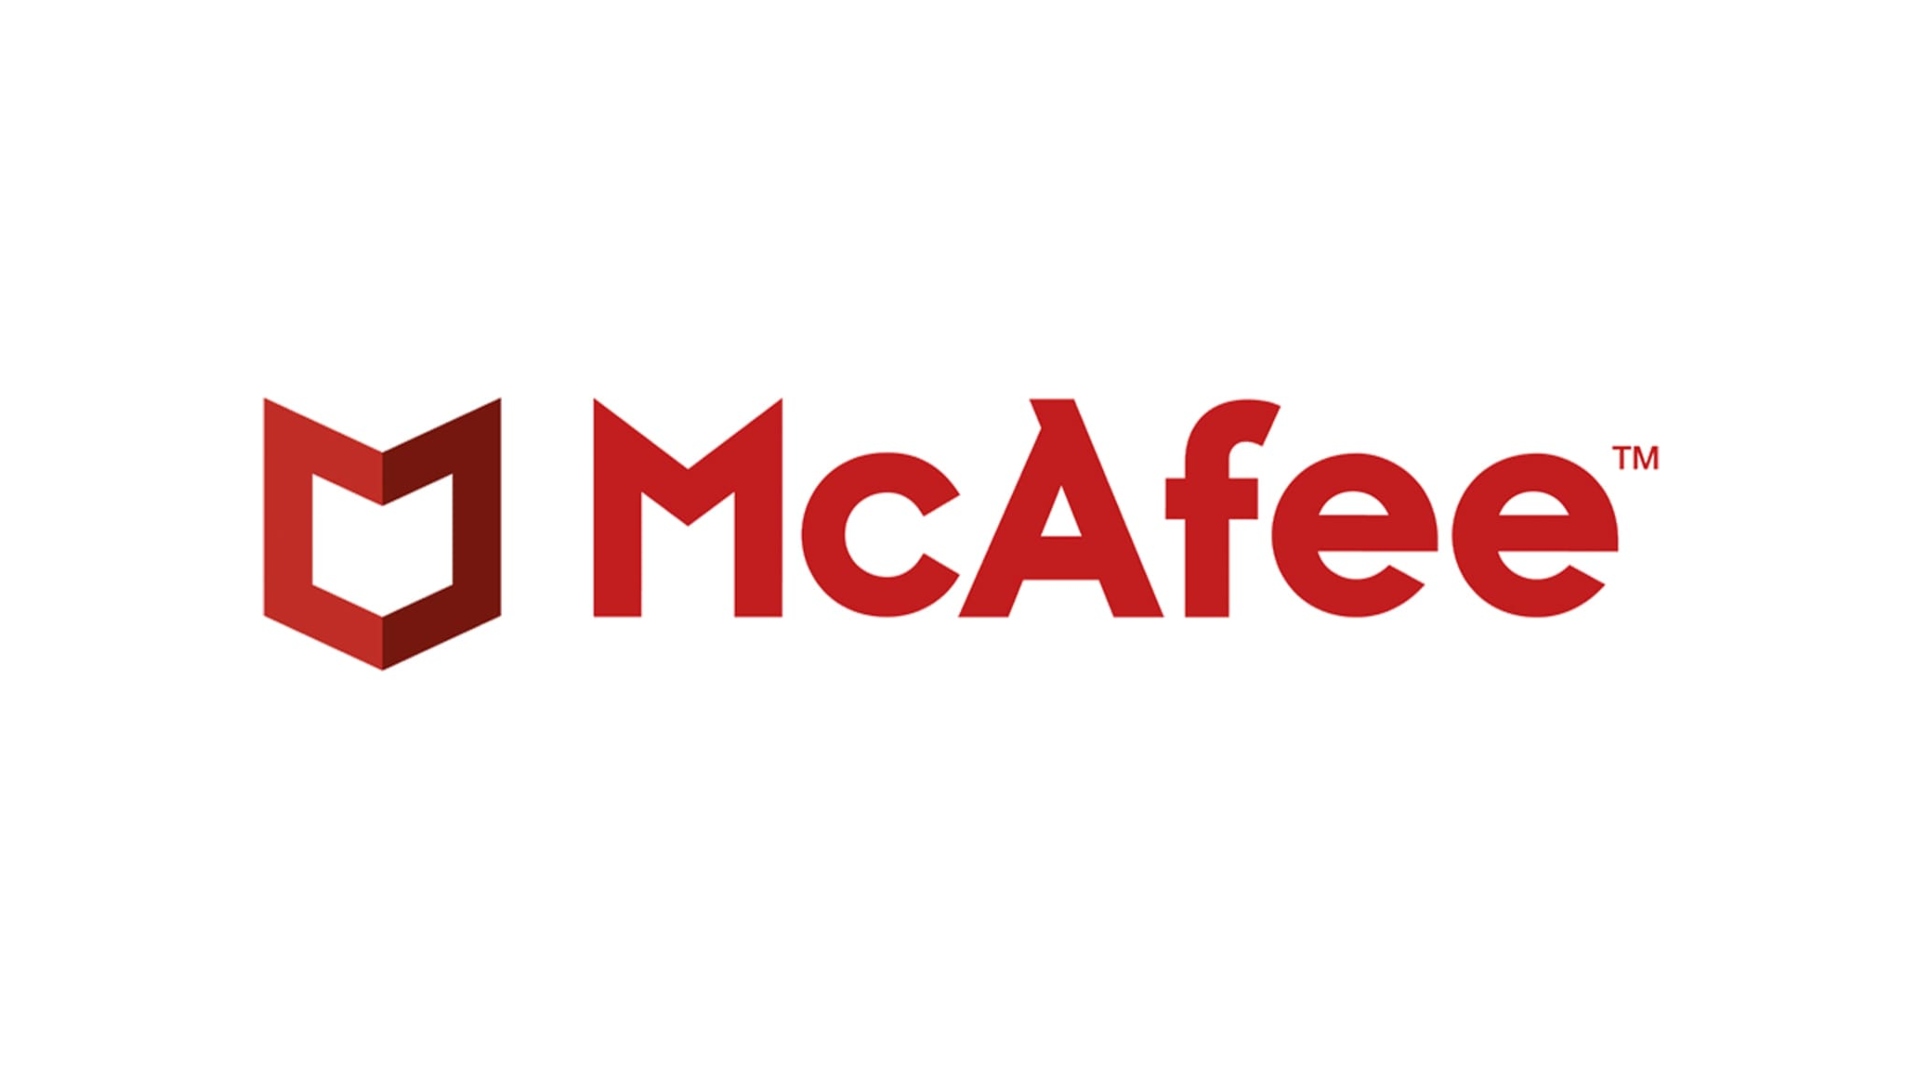 Antivirus paling apik: McAfee ditulis kanthi warna abang ing latar putih bebarengan karo insignia